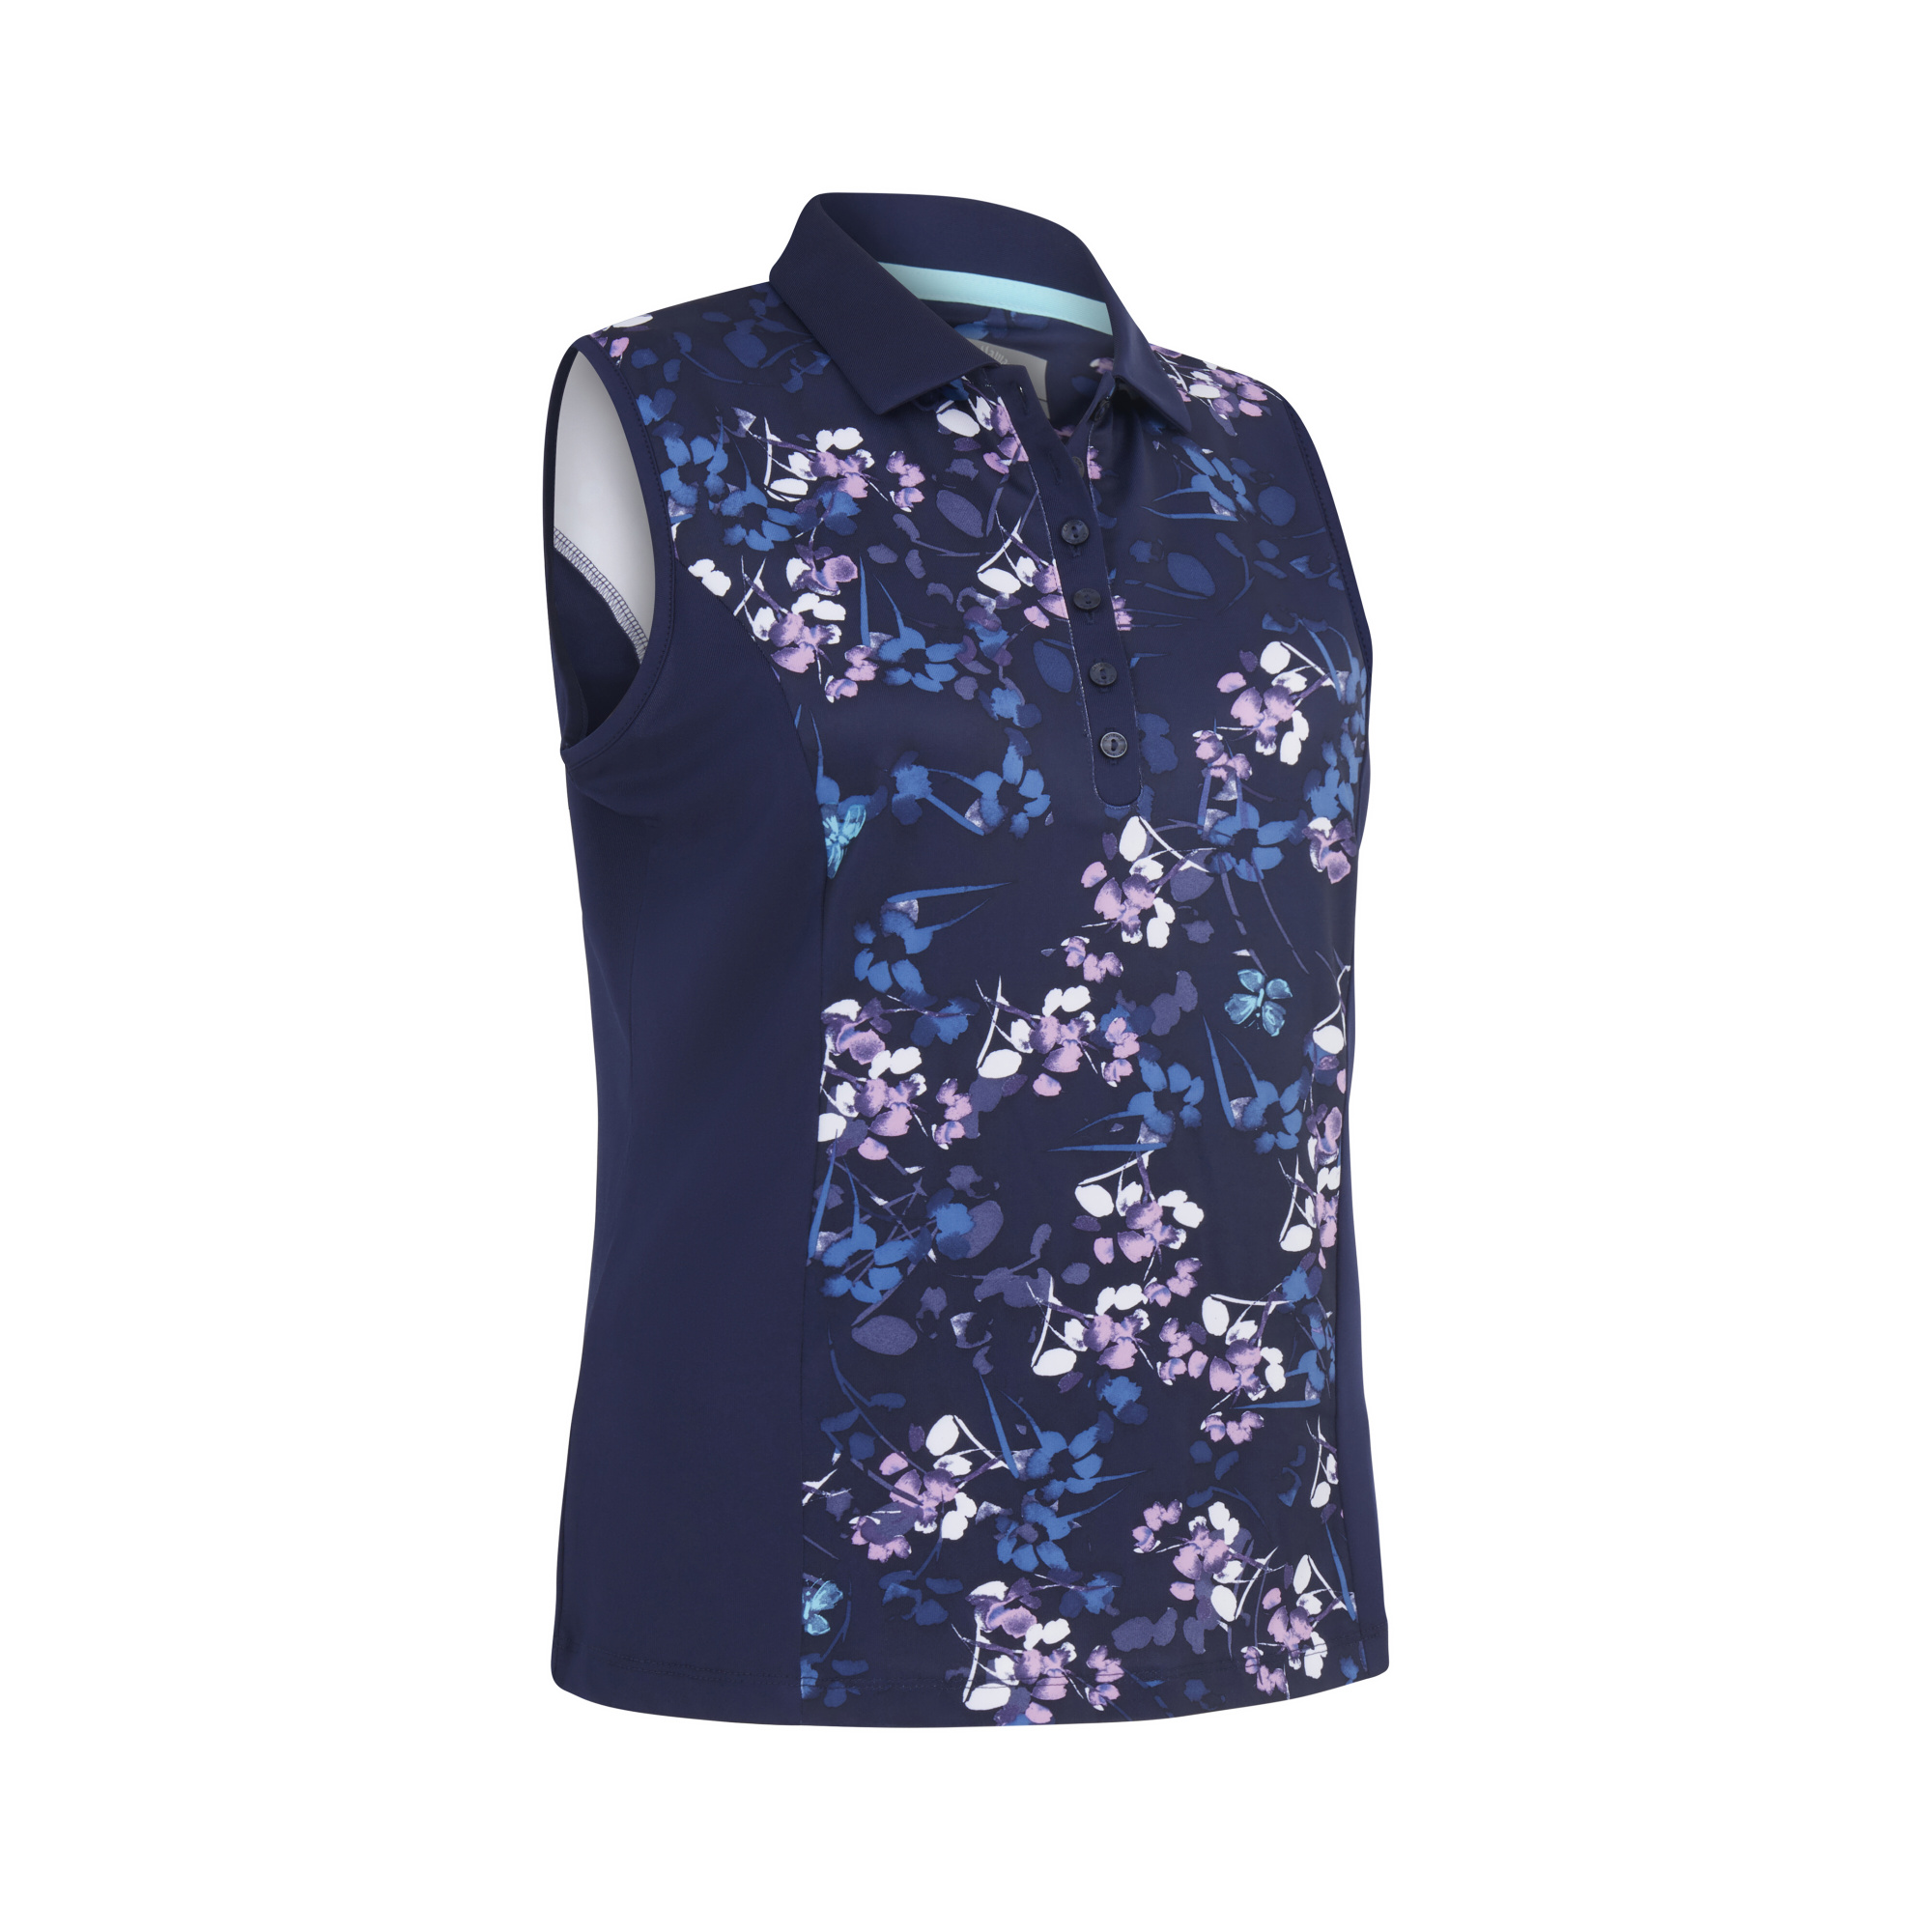 Callaway Butterfly Floral Printed dámské golfové triko bez rukávů, tmavě modré, vel. XL